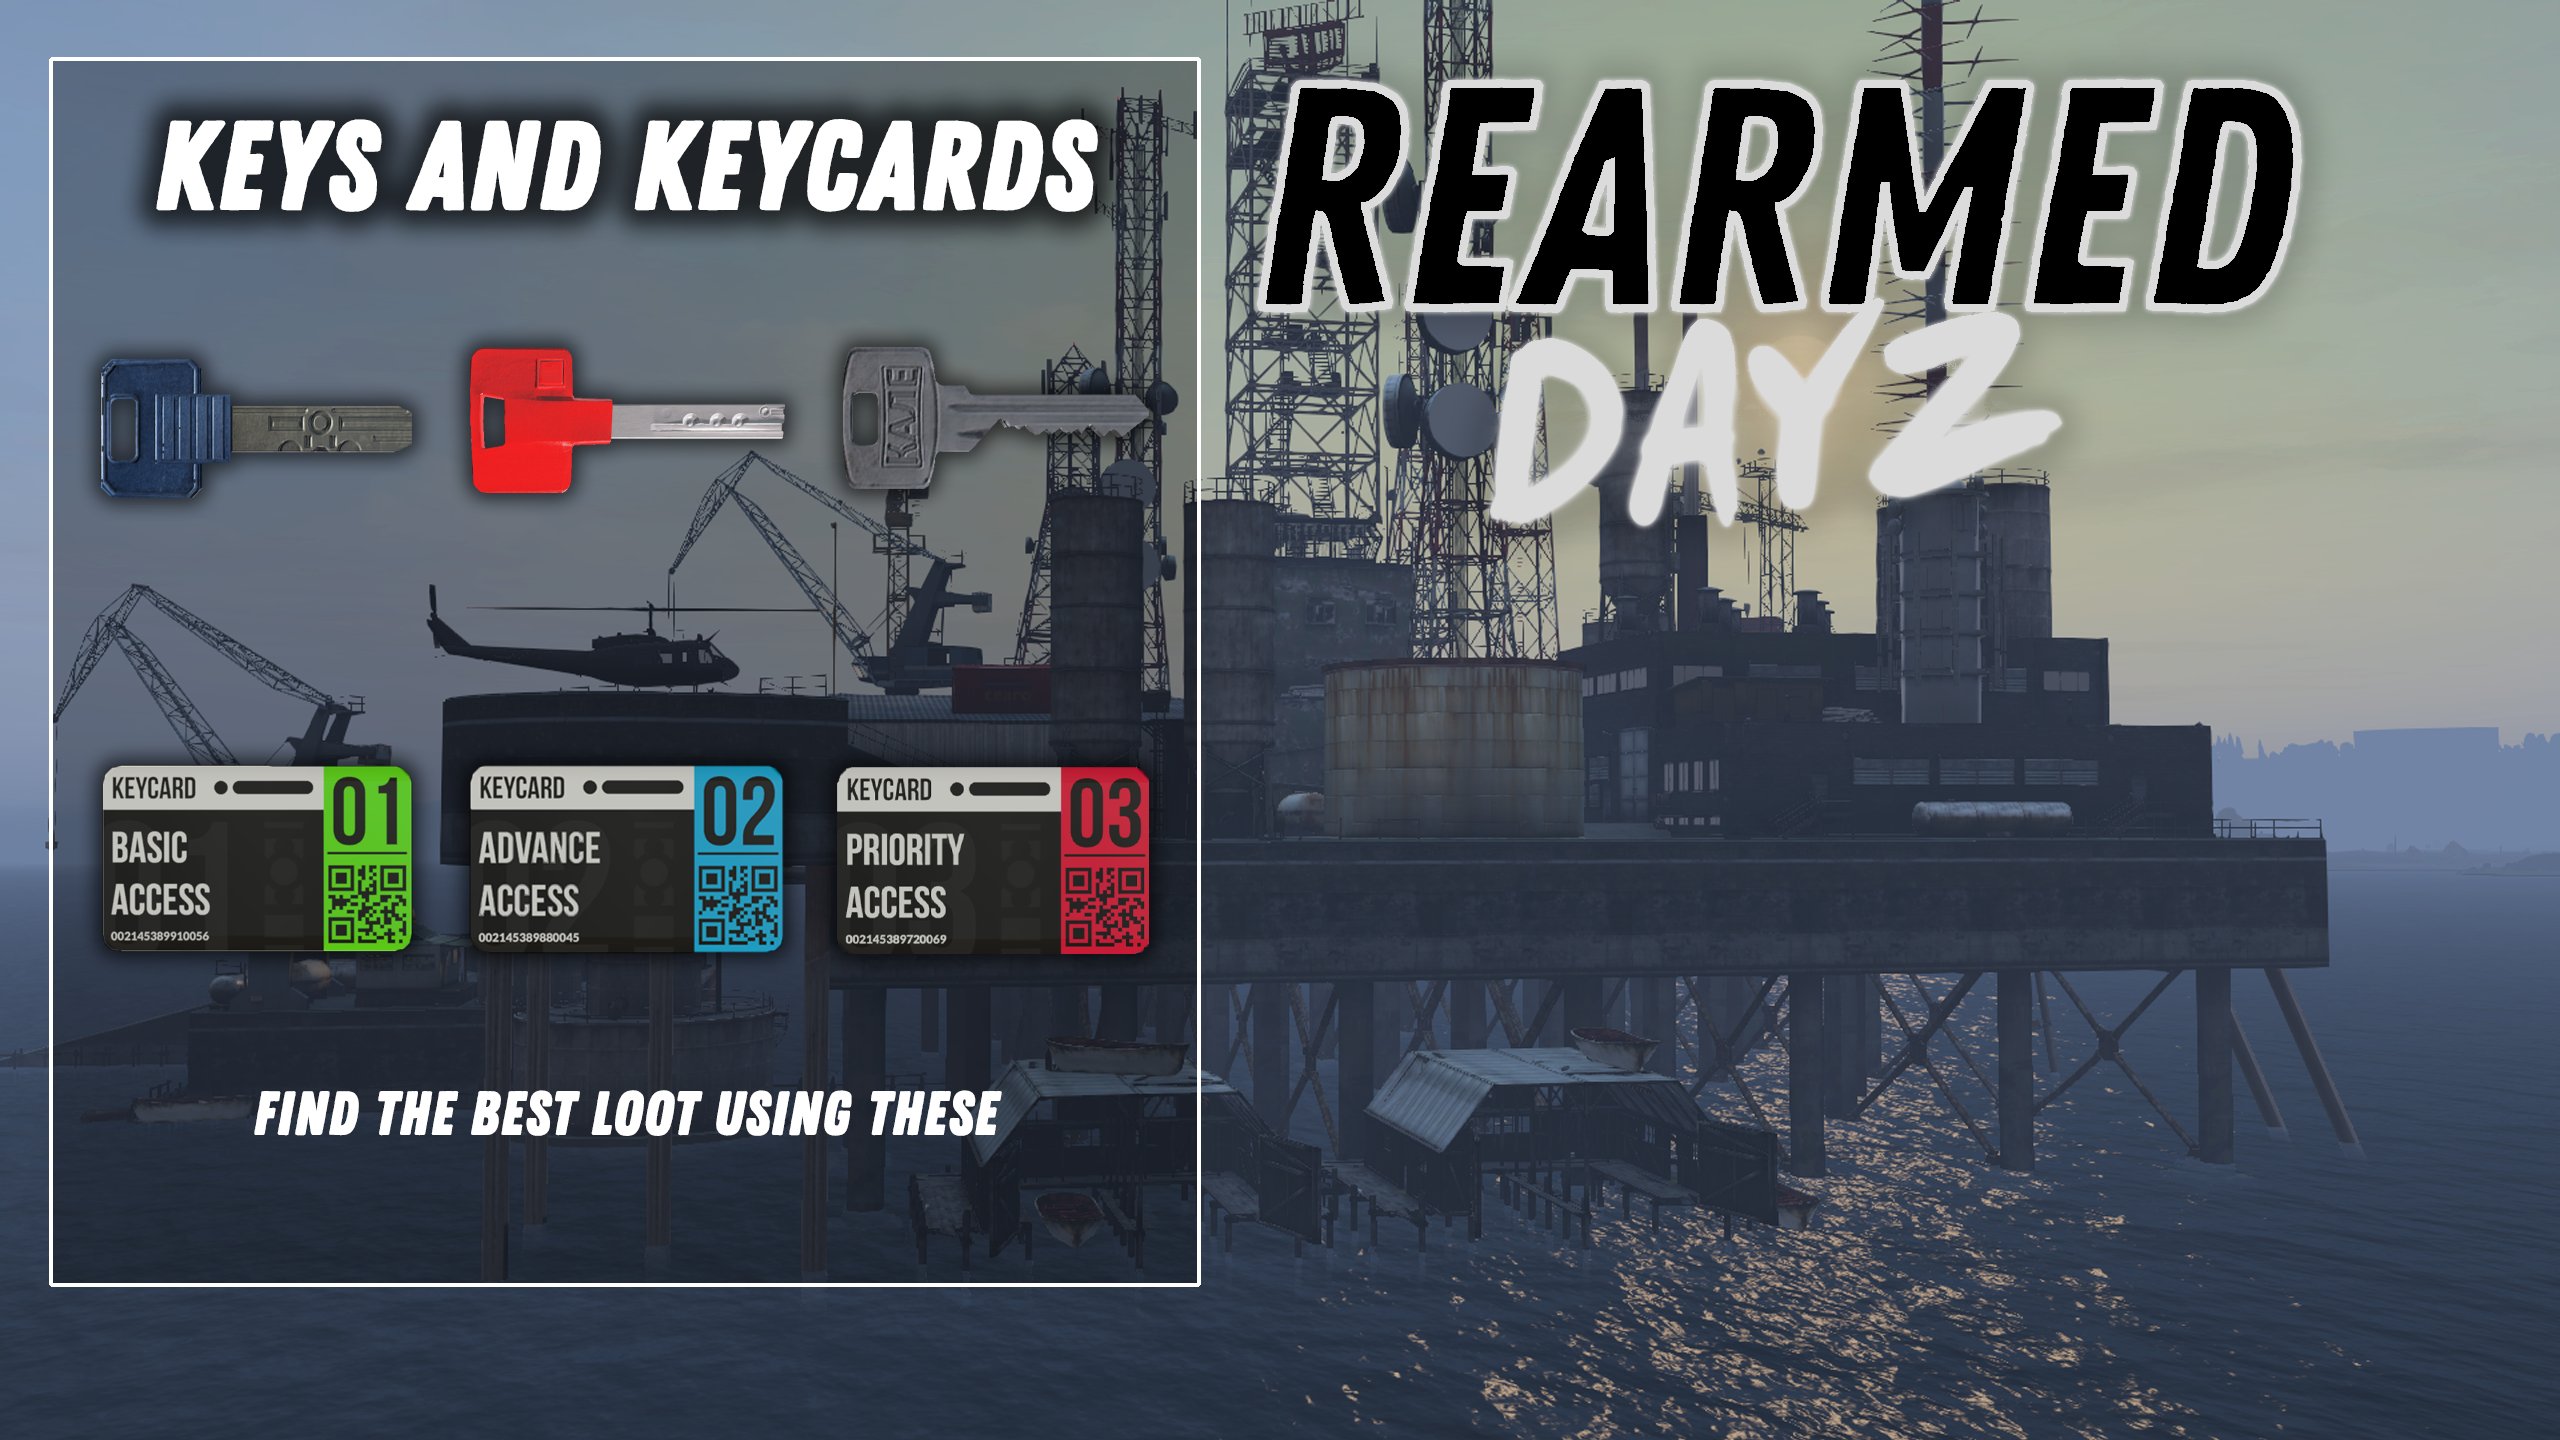 DayZ Rearmed on X: NEW ARMOR AND KEYS/KEYCARDS WITH FRESH WIPE